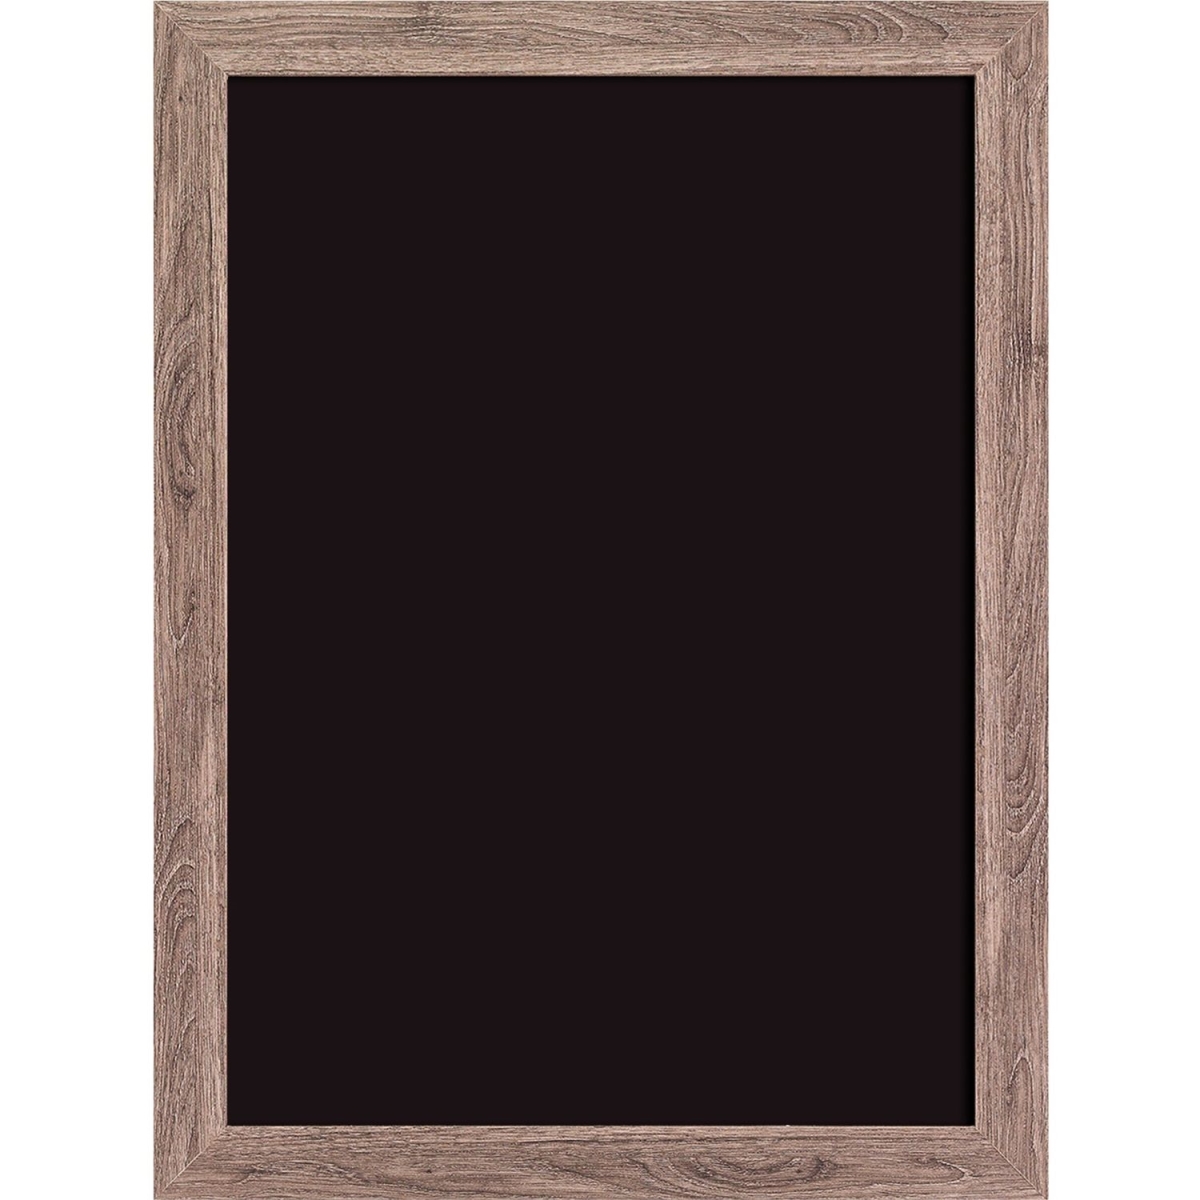 Picture of U Brands UBR4550U0001 Decor Rustic Framed Magnetic Chalkboard